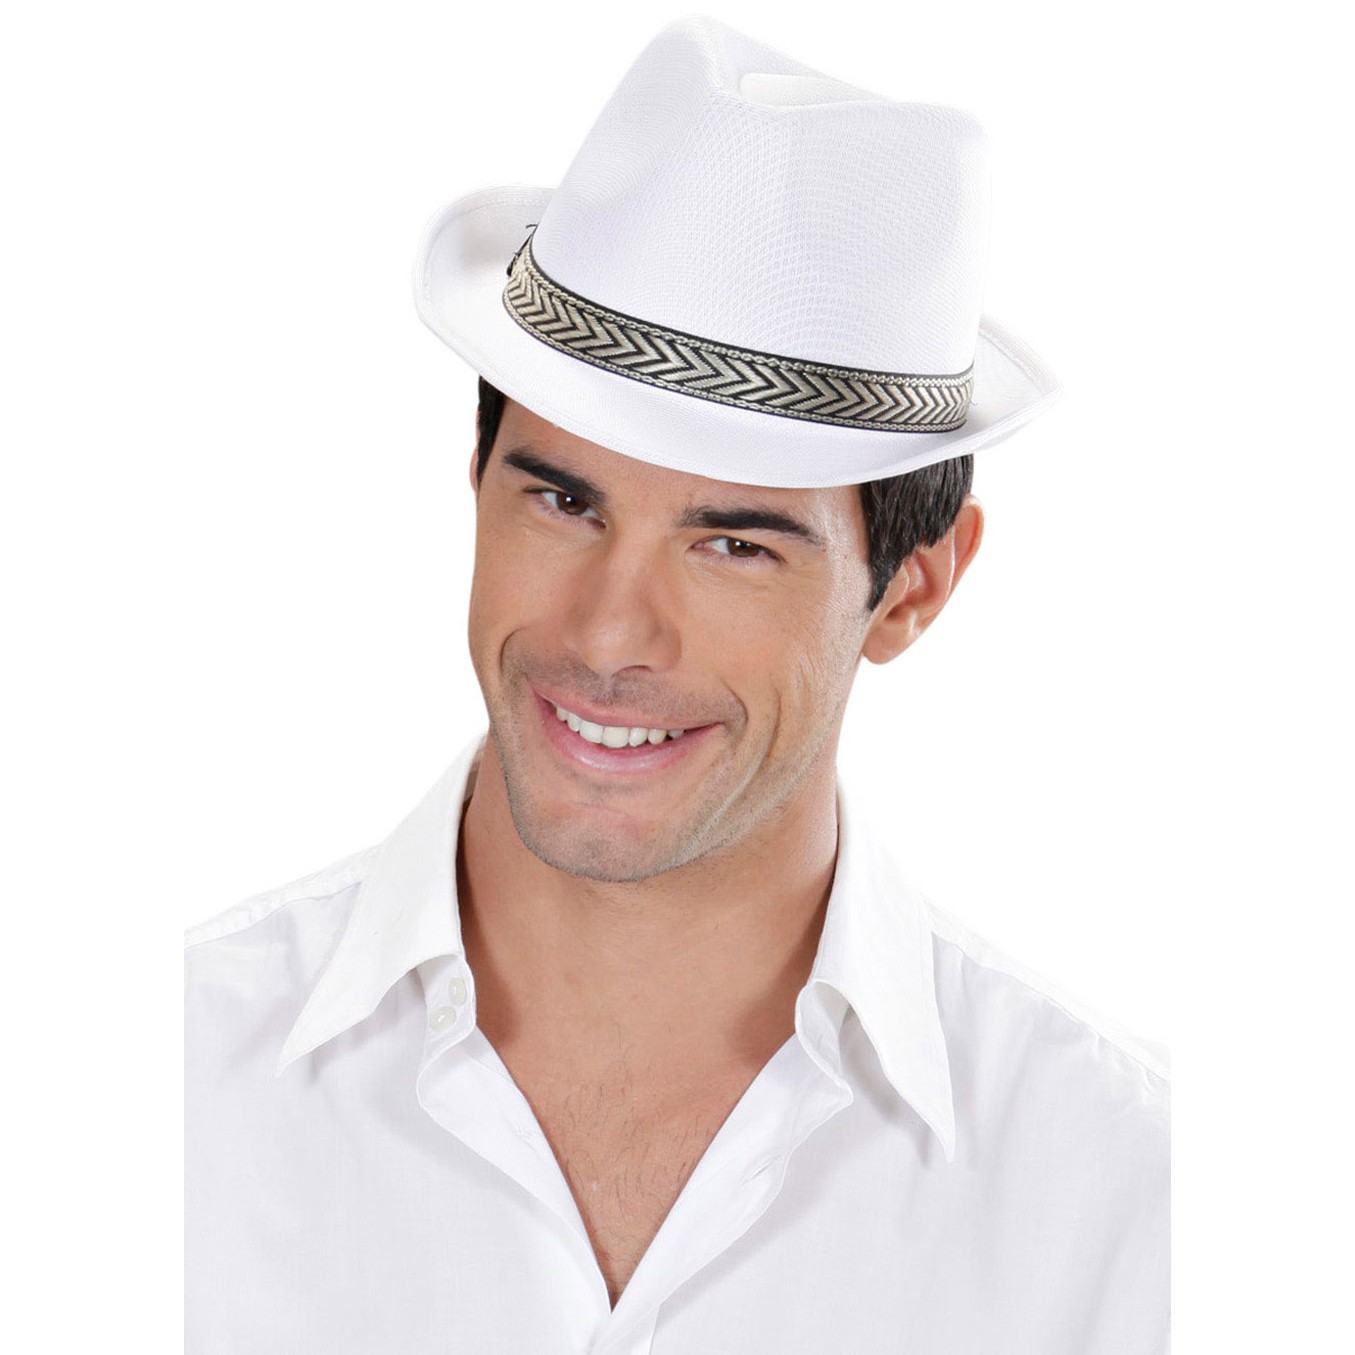 Karneval Fasching Hut Mütze Kopfbedeckung Popstar Fedora Hut weiß NEU